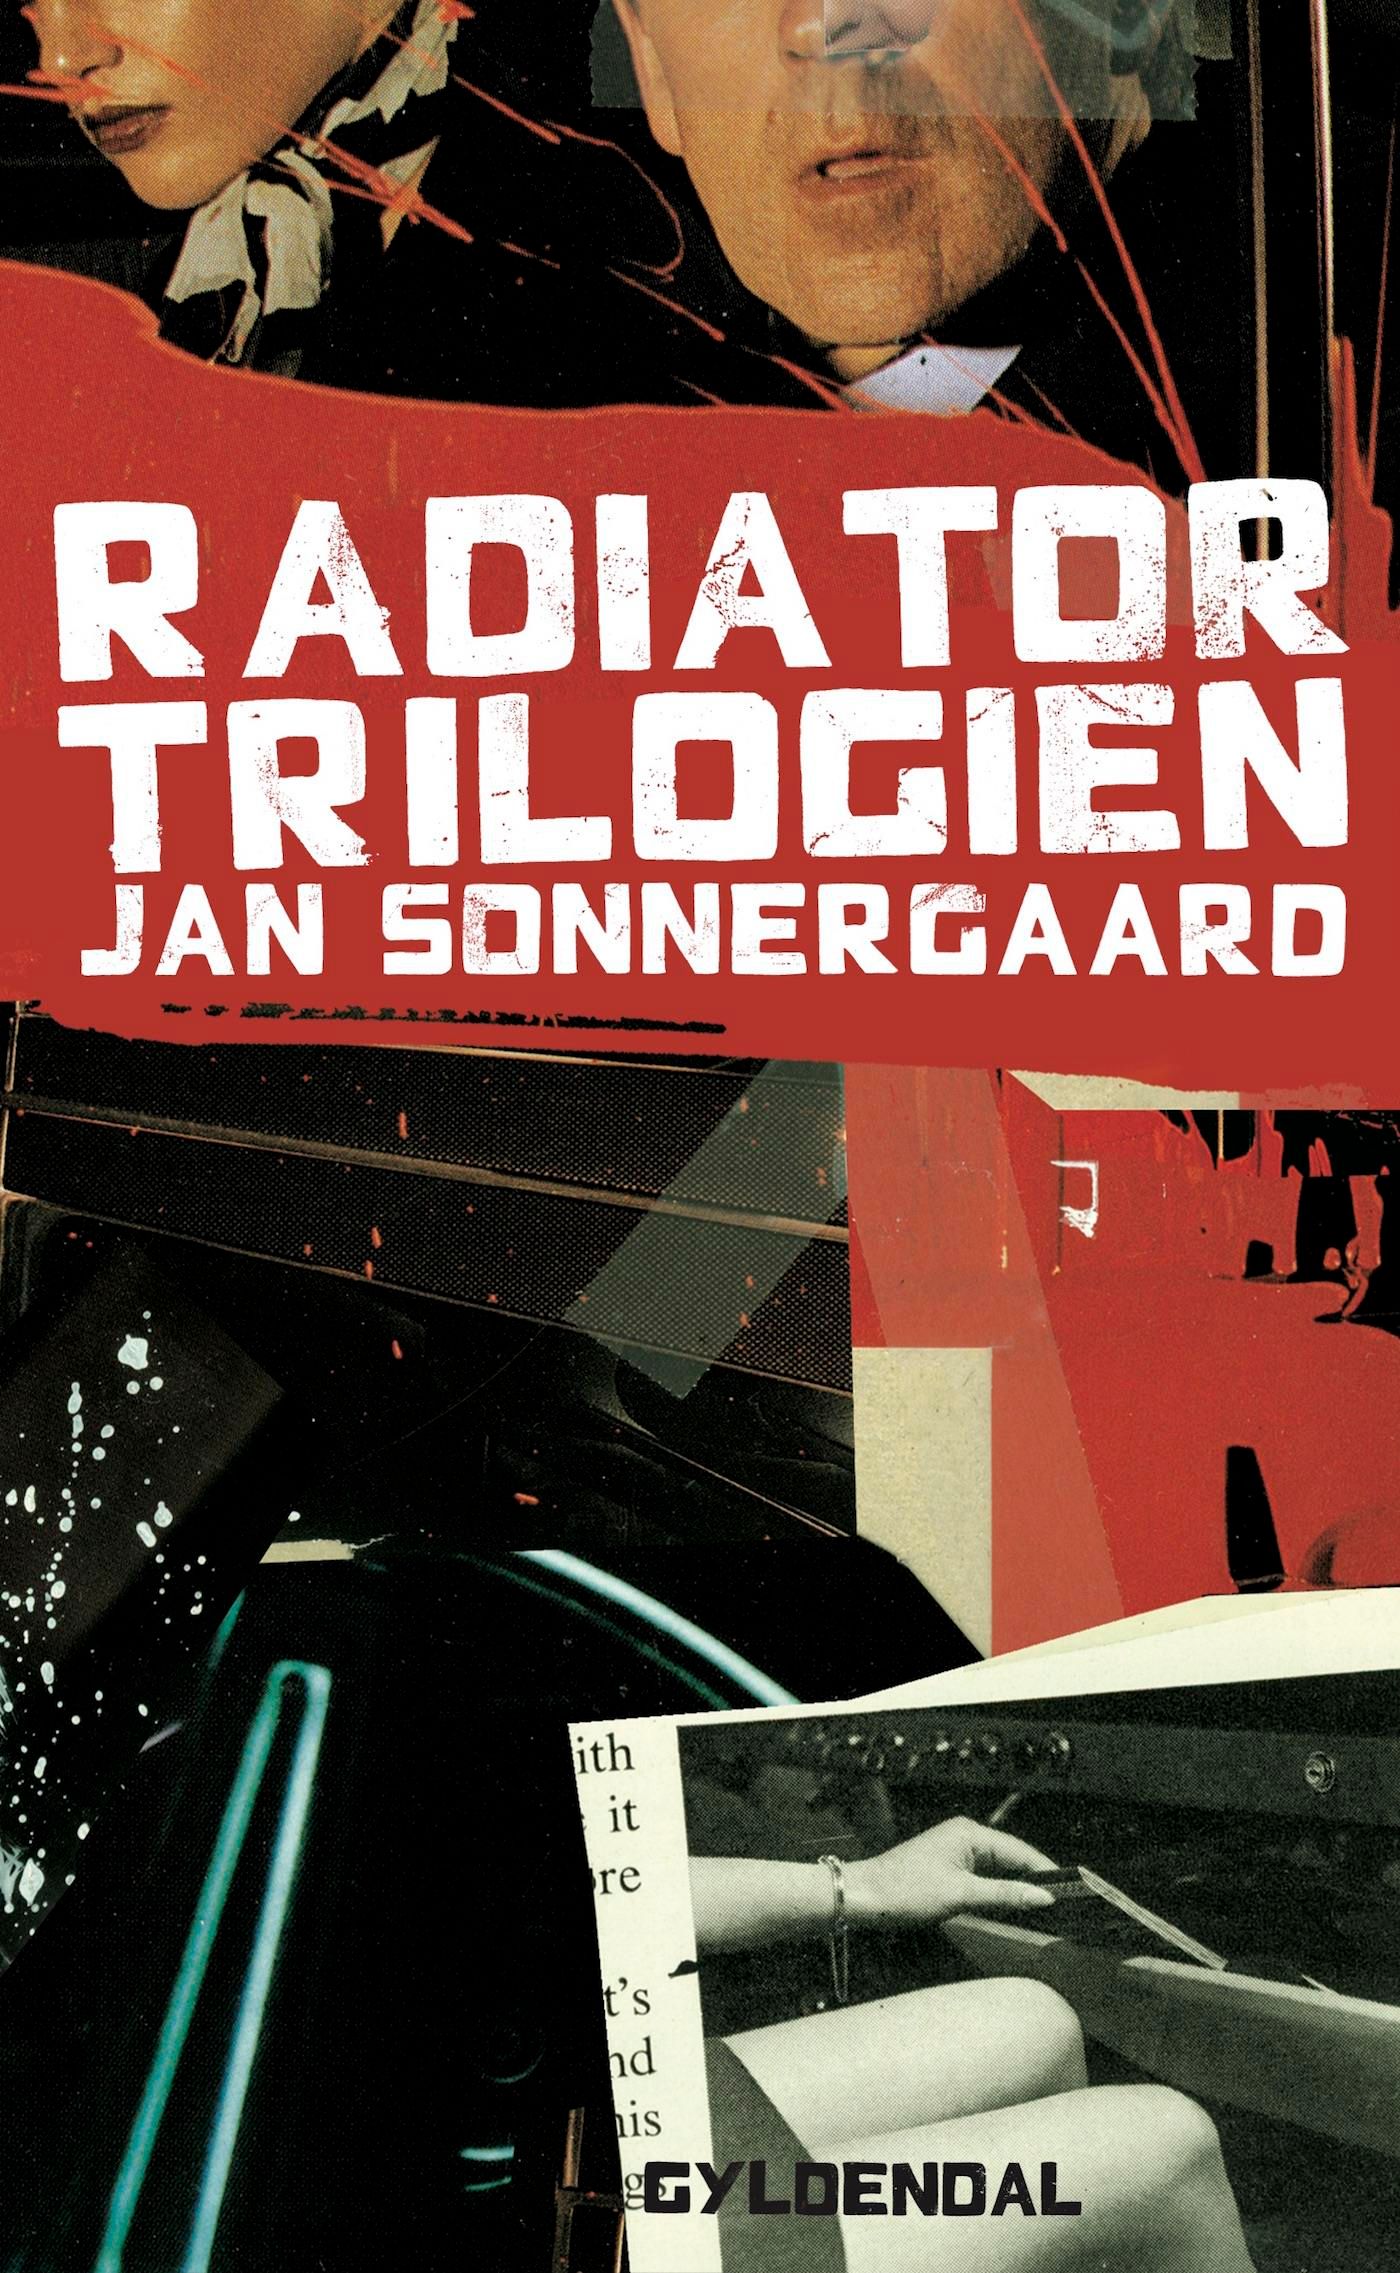 Radiatortrilogien, e-bog af Jan Sonnergaard